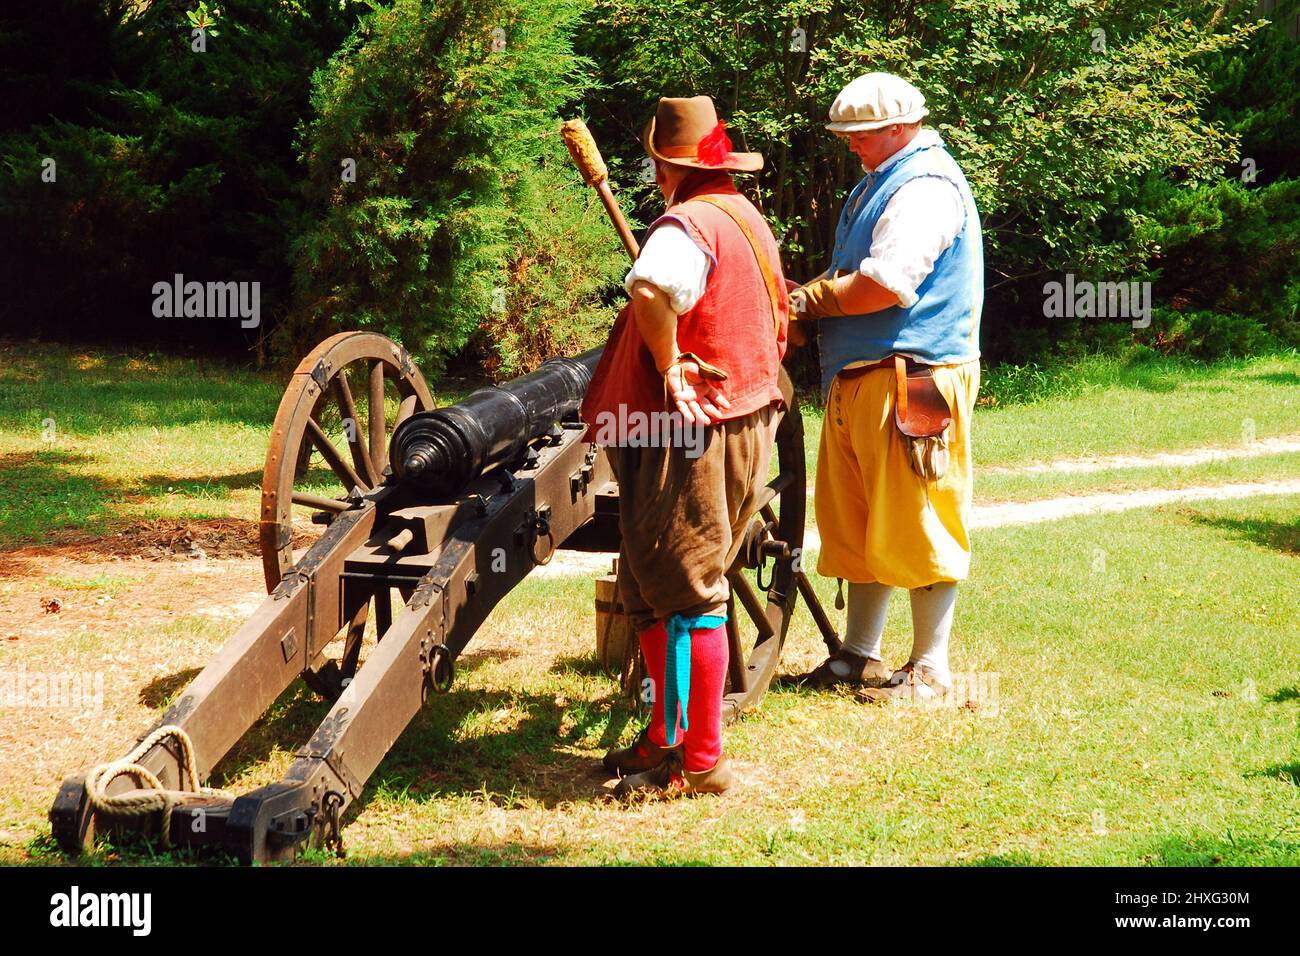 Zwei Erwachsene Männer demonstrieren, wie sie in Jamestown, Virginia, einen Kanon aus der Kolonialzeit feuerten Stockfoto